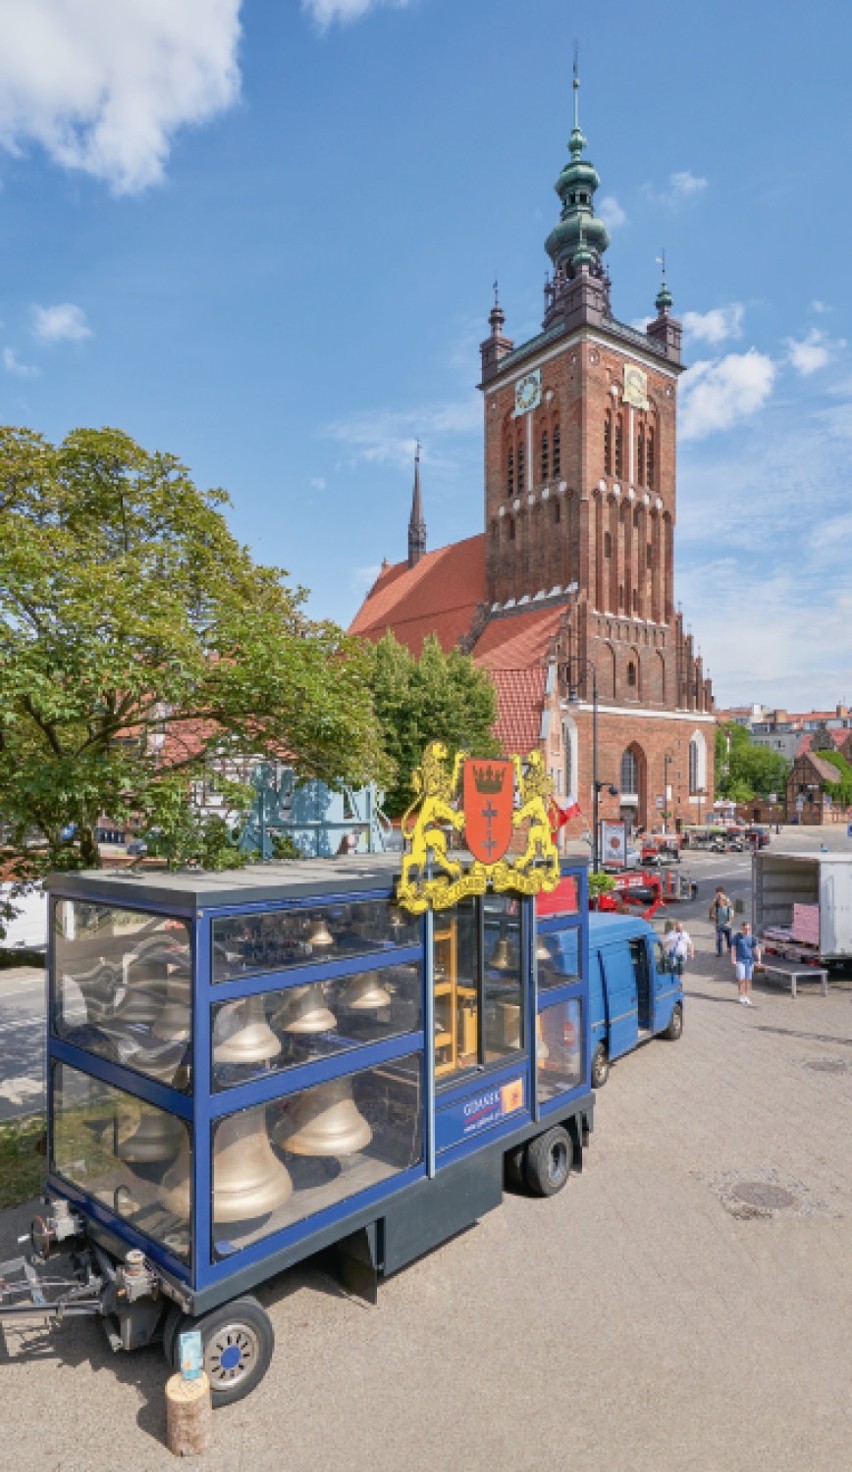 Miasto rozpoczyna starania o wpisanie kultury carillonowej na listę niematerialnego dziedzictwa UNESCO. Spotkanie z mieszkańcami Gdańska